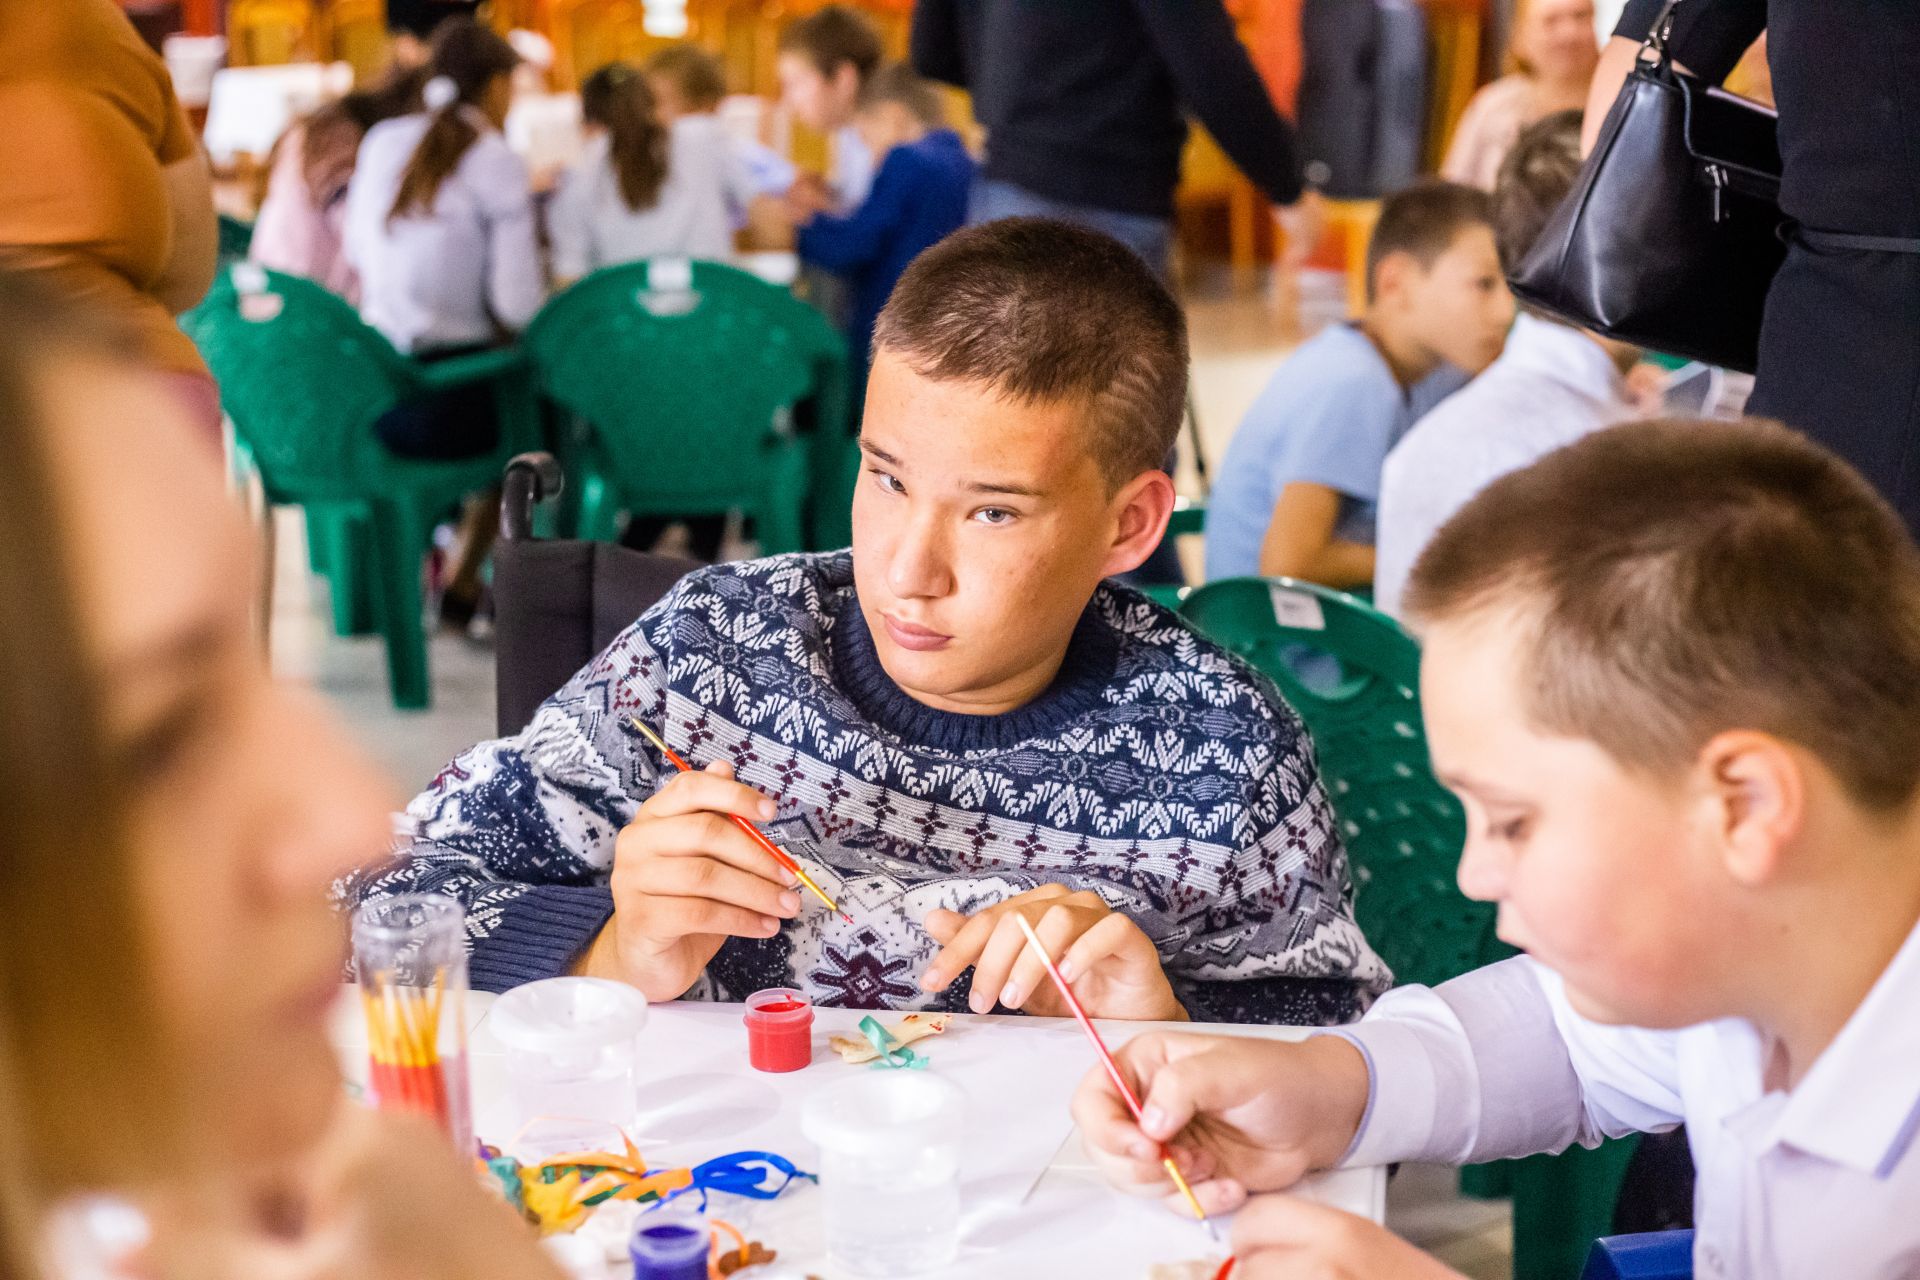 В Болгаре прошёл Фестиваль творчества детей с ограниченными возможностями здоровья "Особые таланты" (ФОТО)